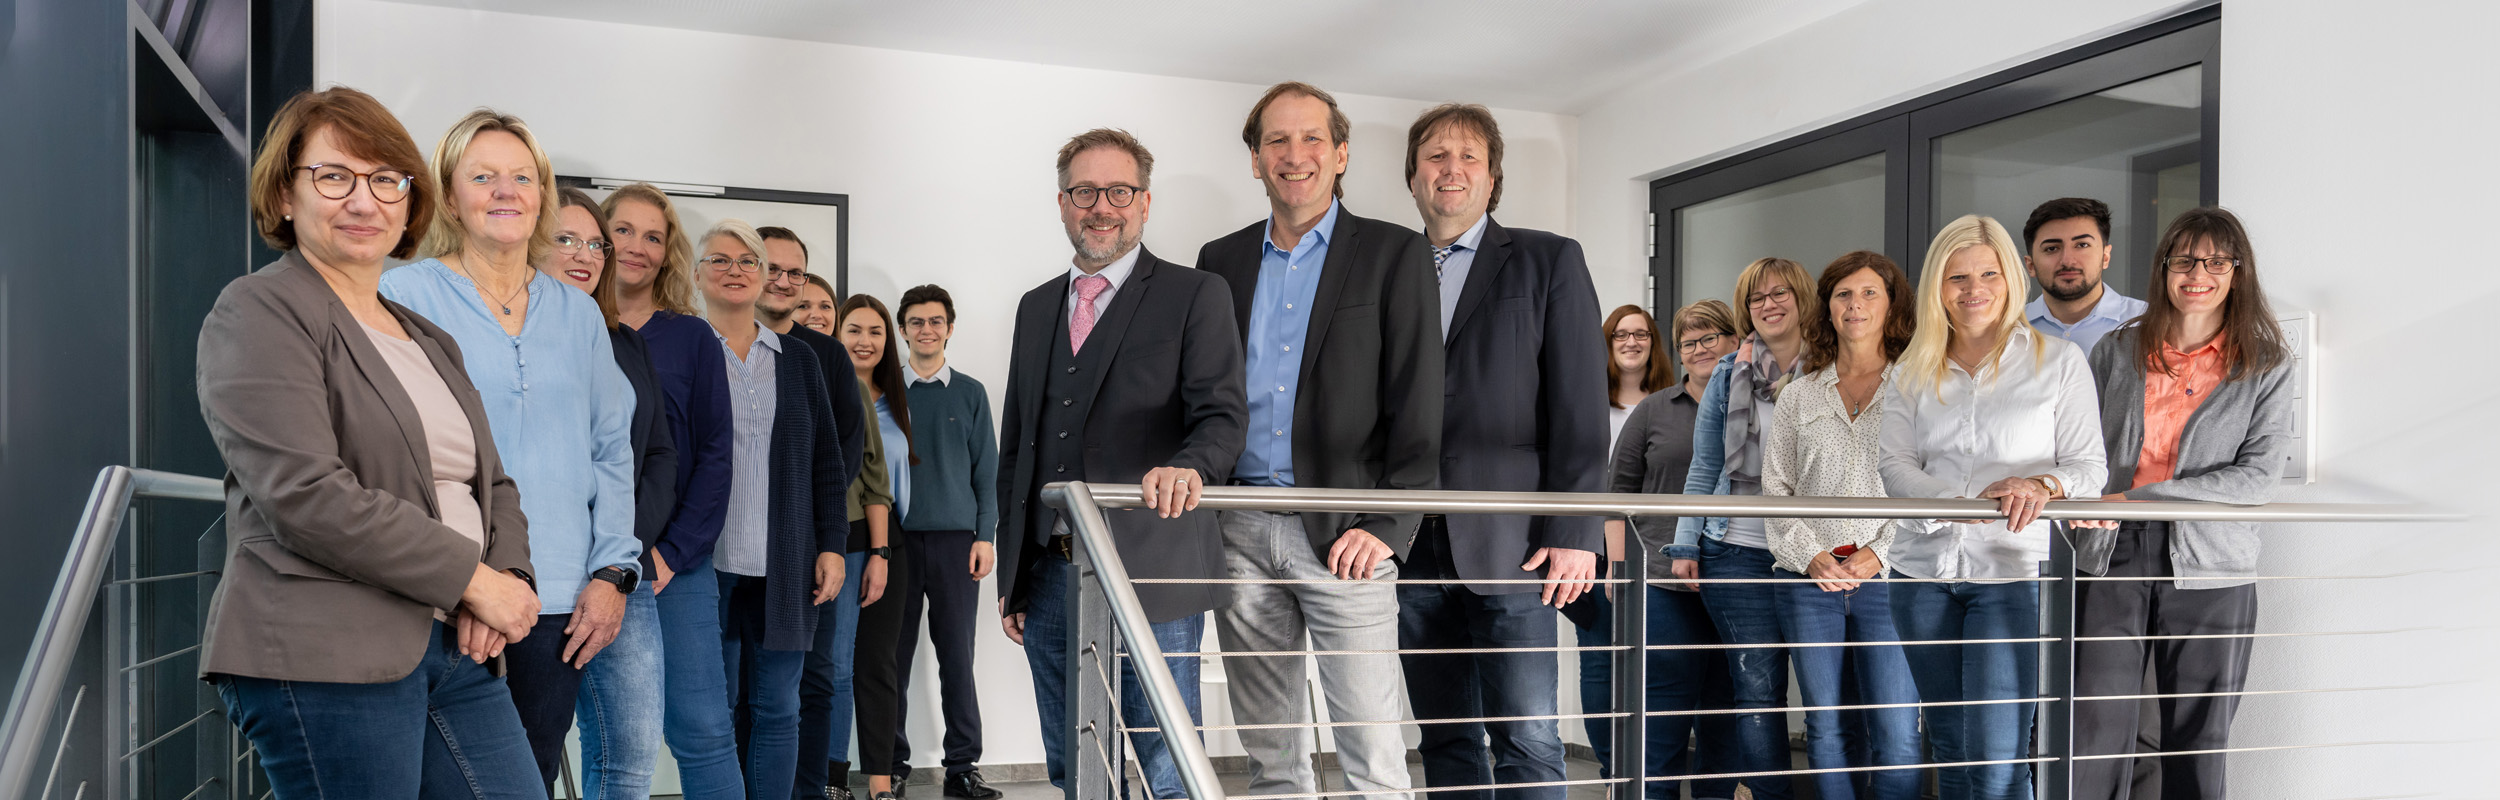 Ein Gruppenbild mit allen Mitarbeitern der Kanzlei. Im Vordergrund stehen Steuerberater Michael Klein, Rüdiger Klein und Rechtsanwalt und Notar Sascha Erbacher.